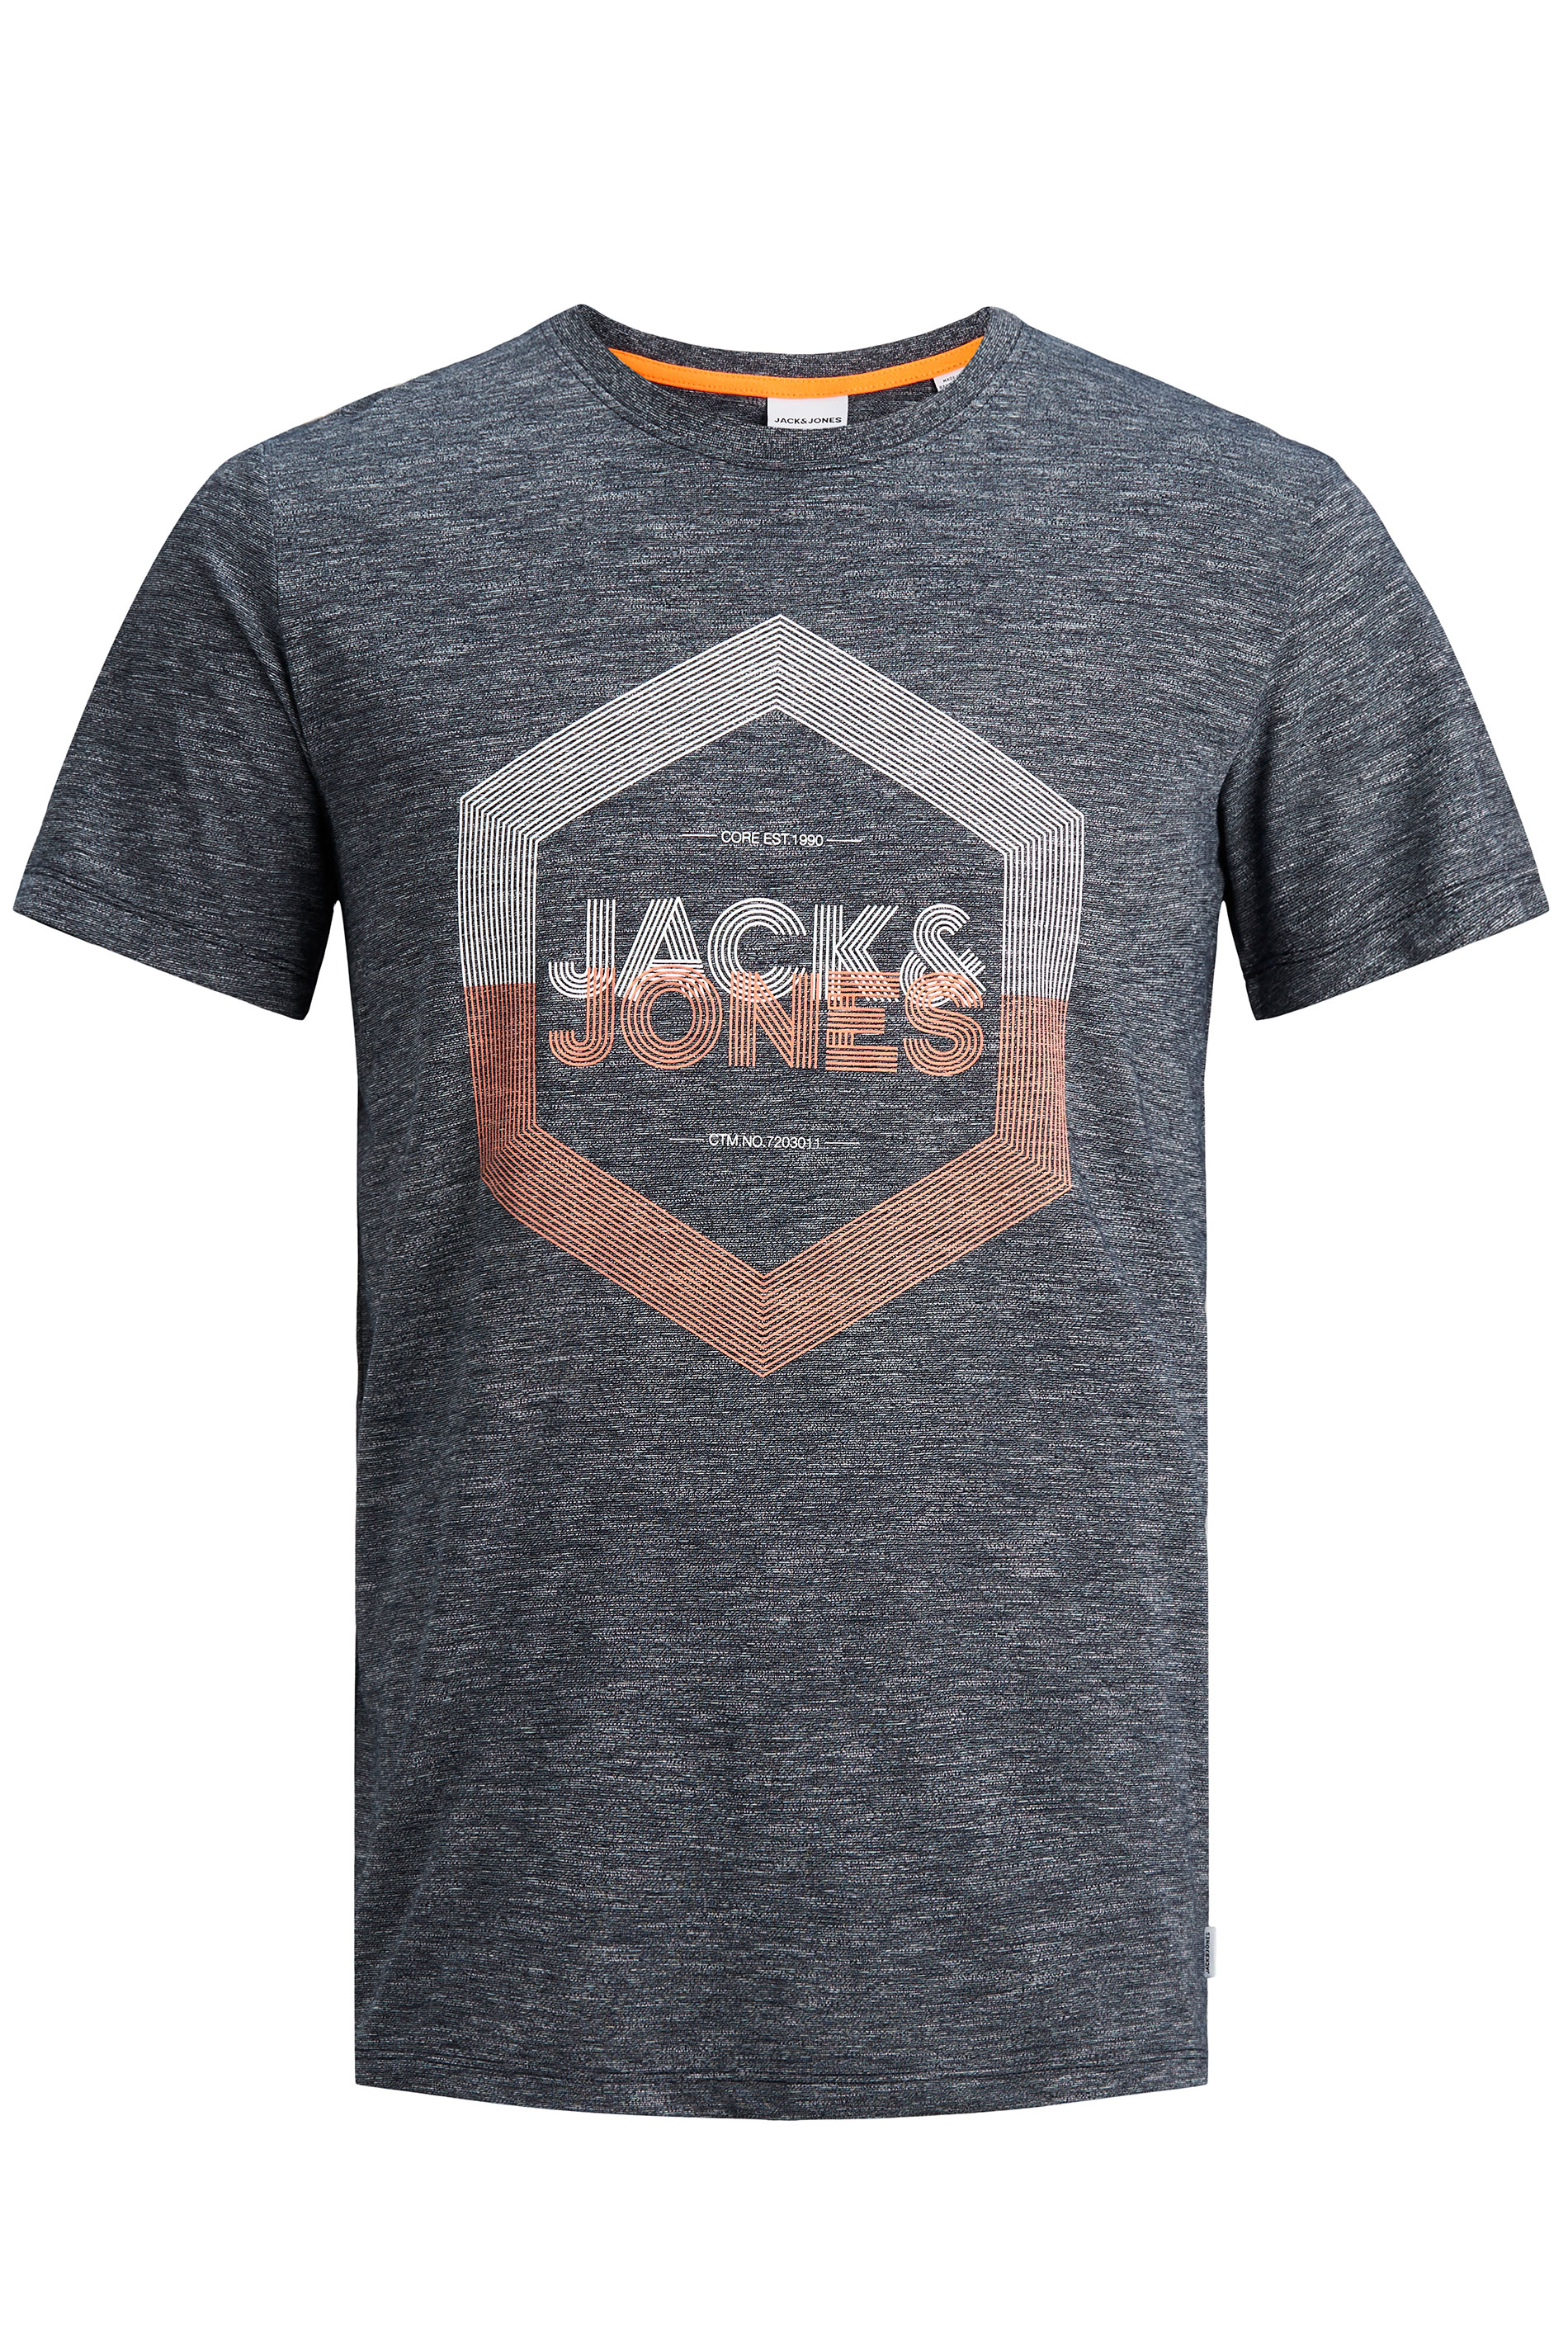 JACK & JONES Navy Delight T-Shirt_F.jpg